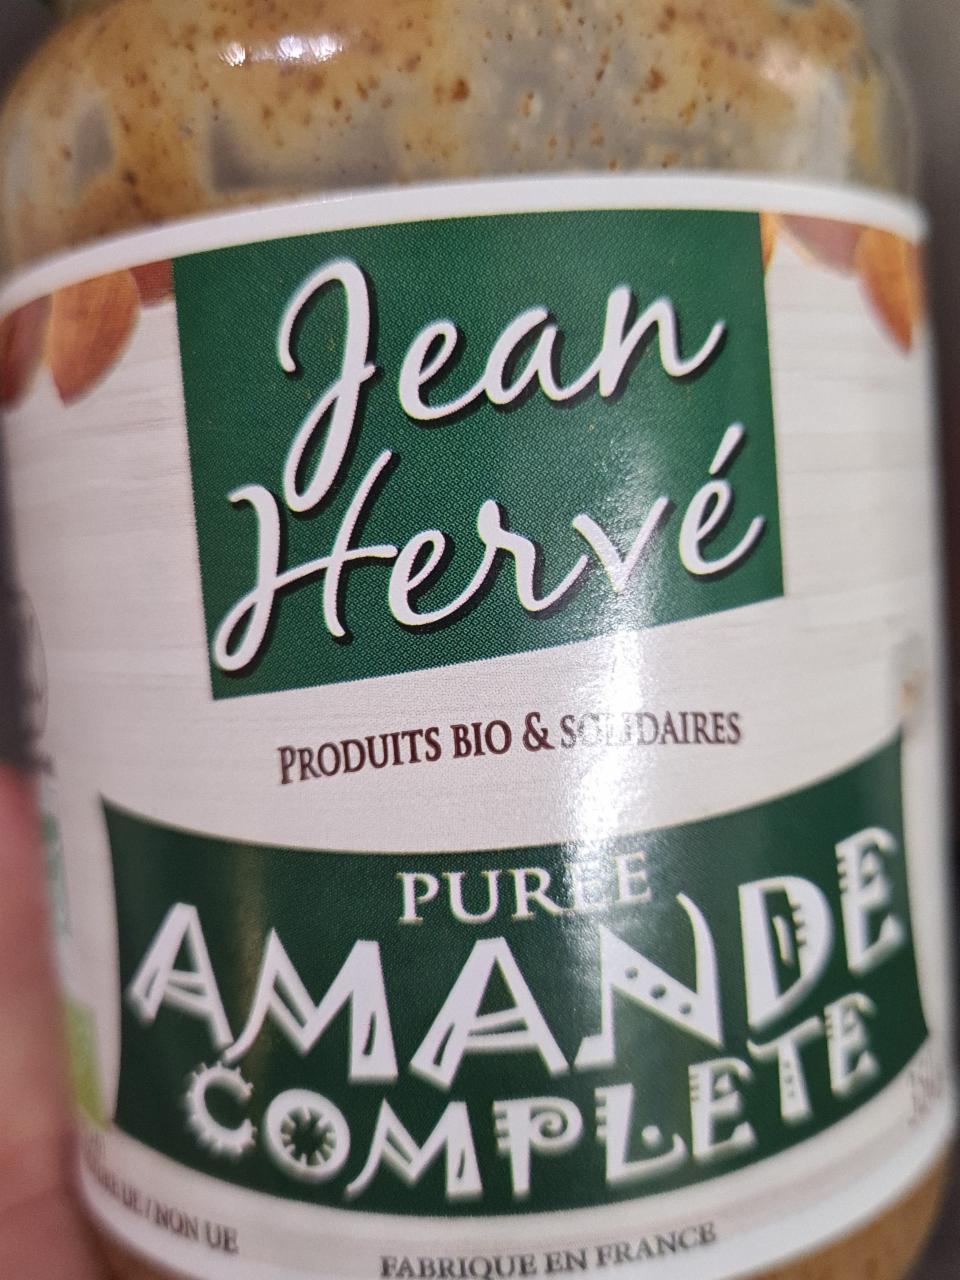 Fotografie - Almond butter Jean Herve Puree Amande Complete